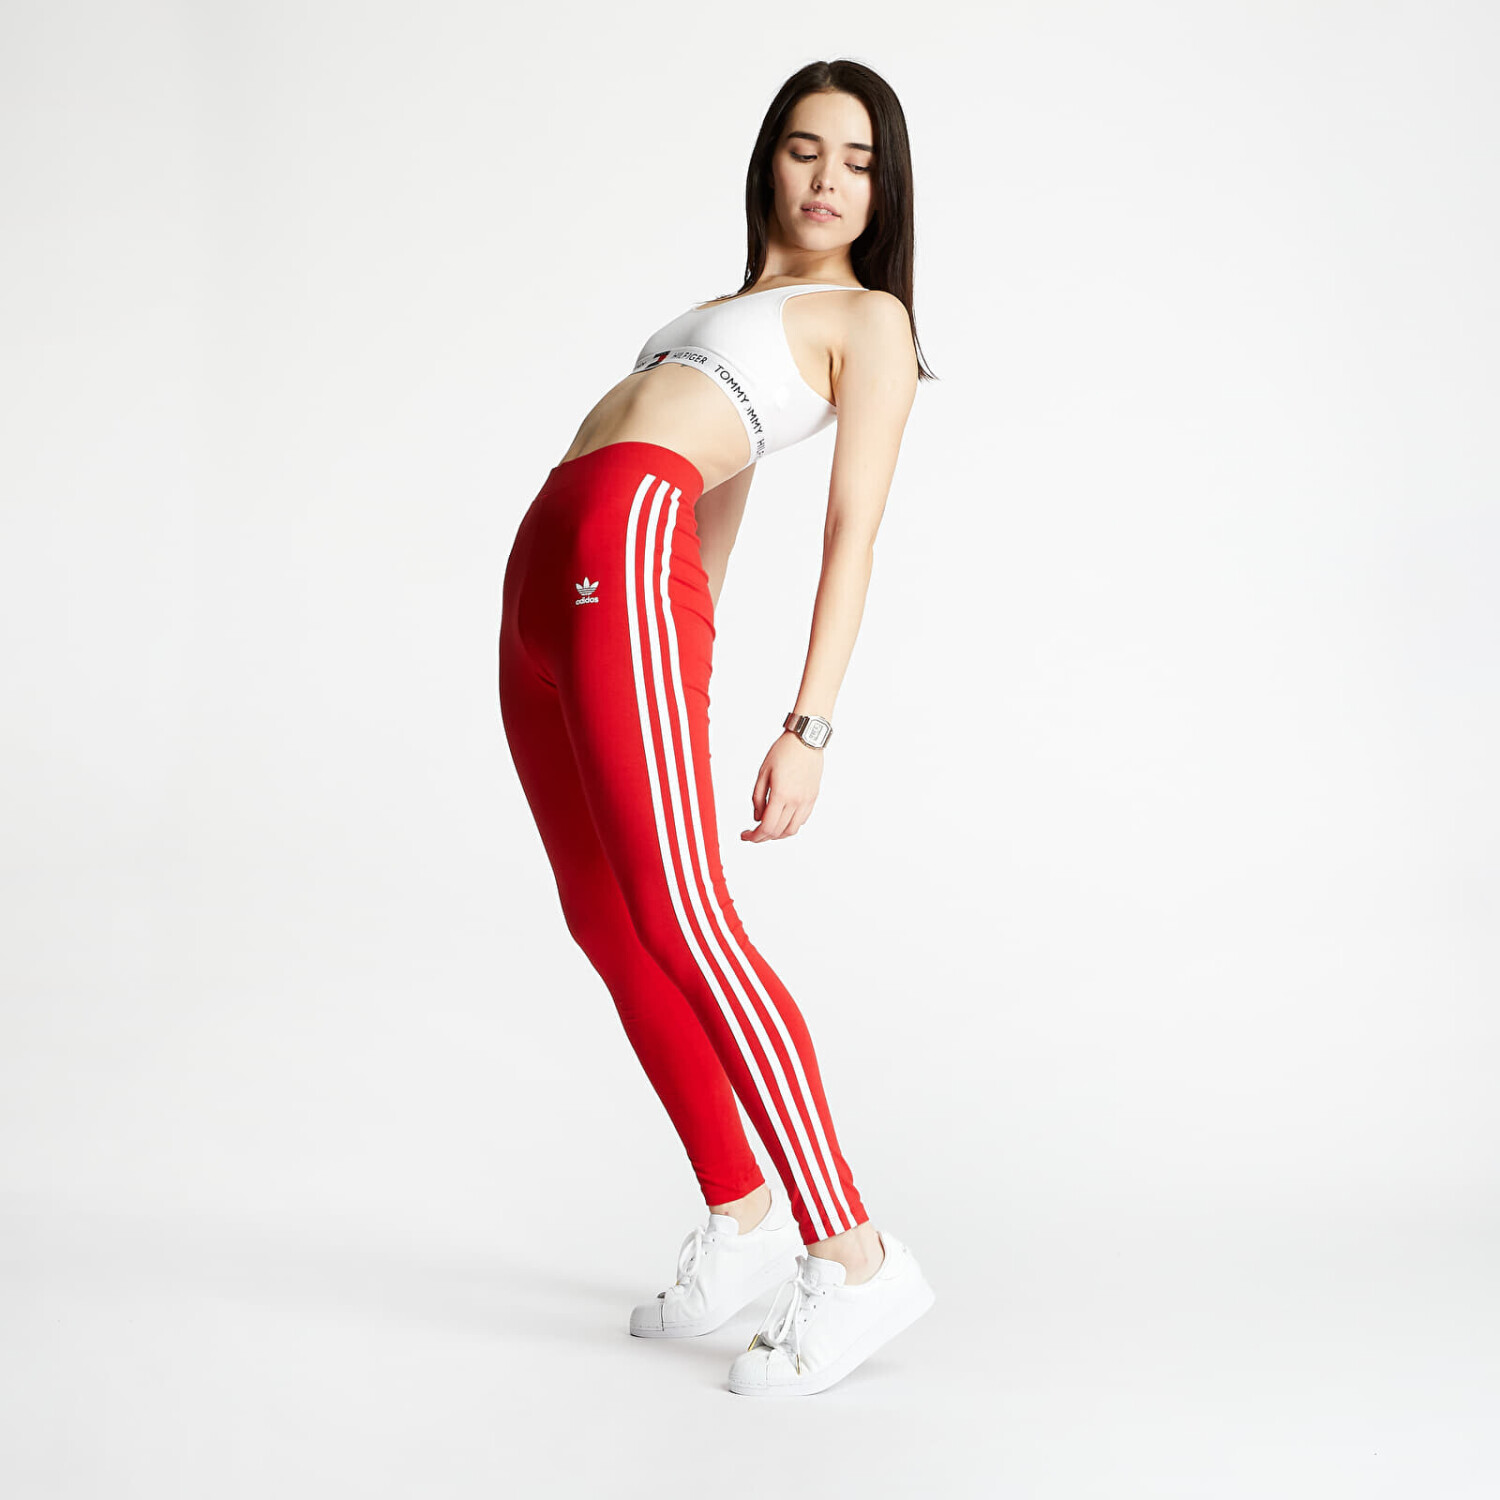 Preisvergleich Adicolor bei 28,95 scarlet Adidas € 3-Stripes Classics ab | Leggings